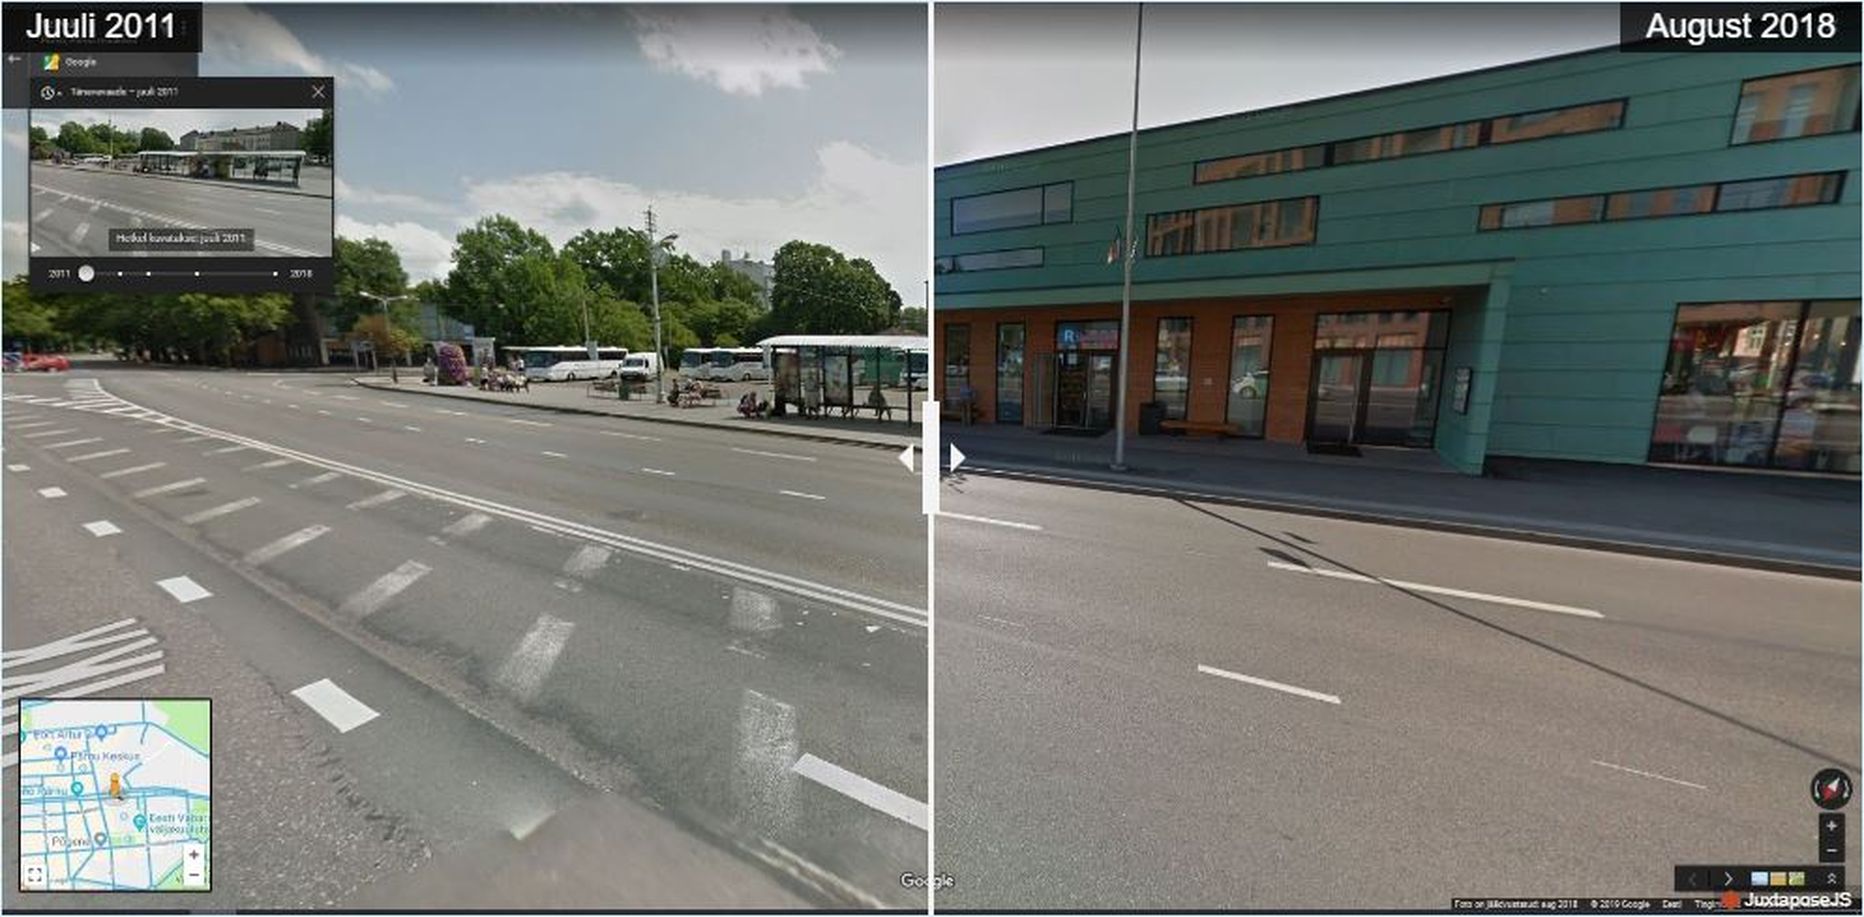 Pärnu bussijaam on läbinud aastate jooksul korraliku muundumise.